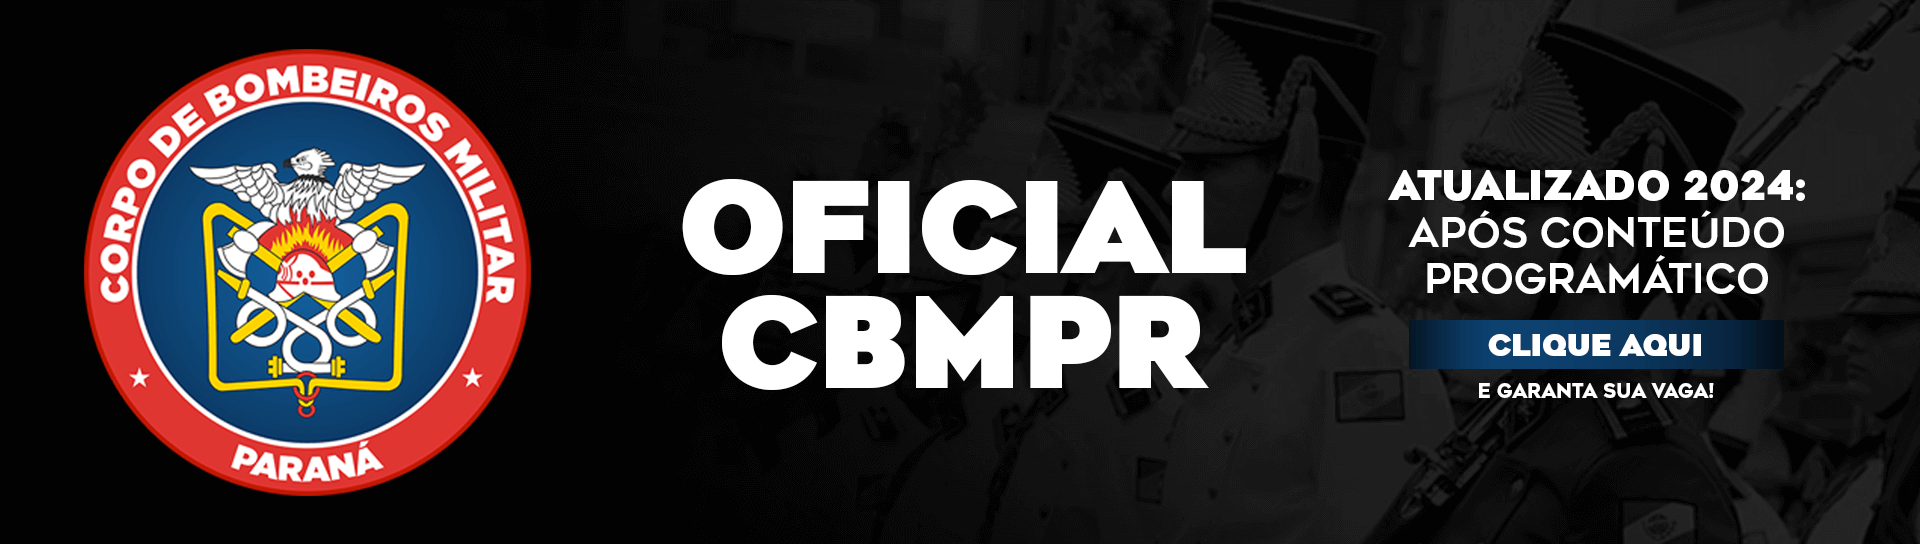 Oficial CBMPR